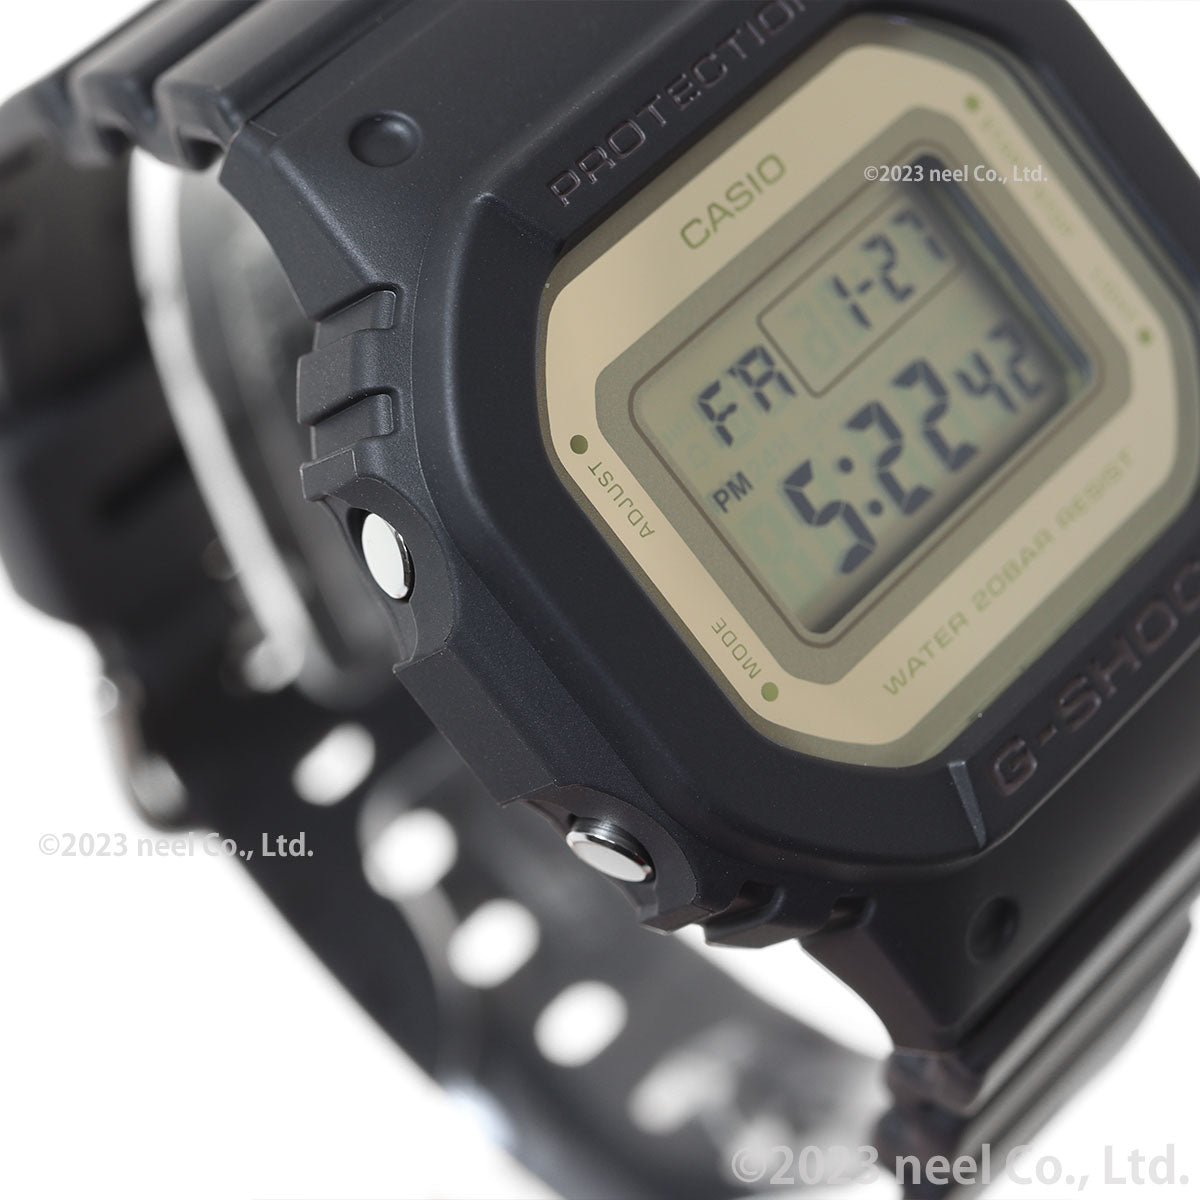 G-SHOCK デジタル カシオ Gショック CASIO デジタル 腕時計 メンズ レディース GMD-S5600-1JF DW-5600 小型化・薄型化モデル